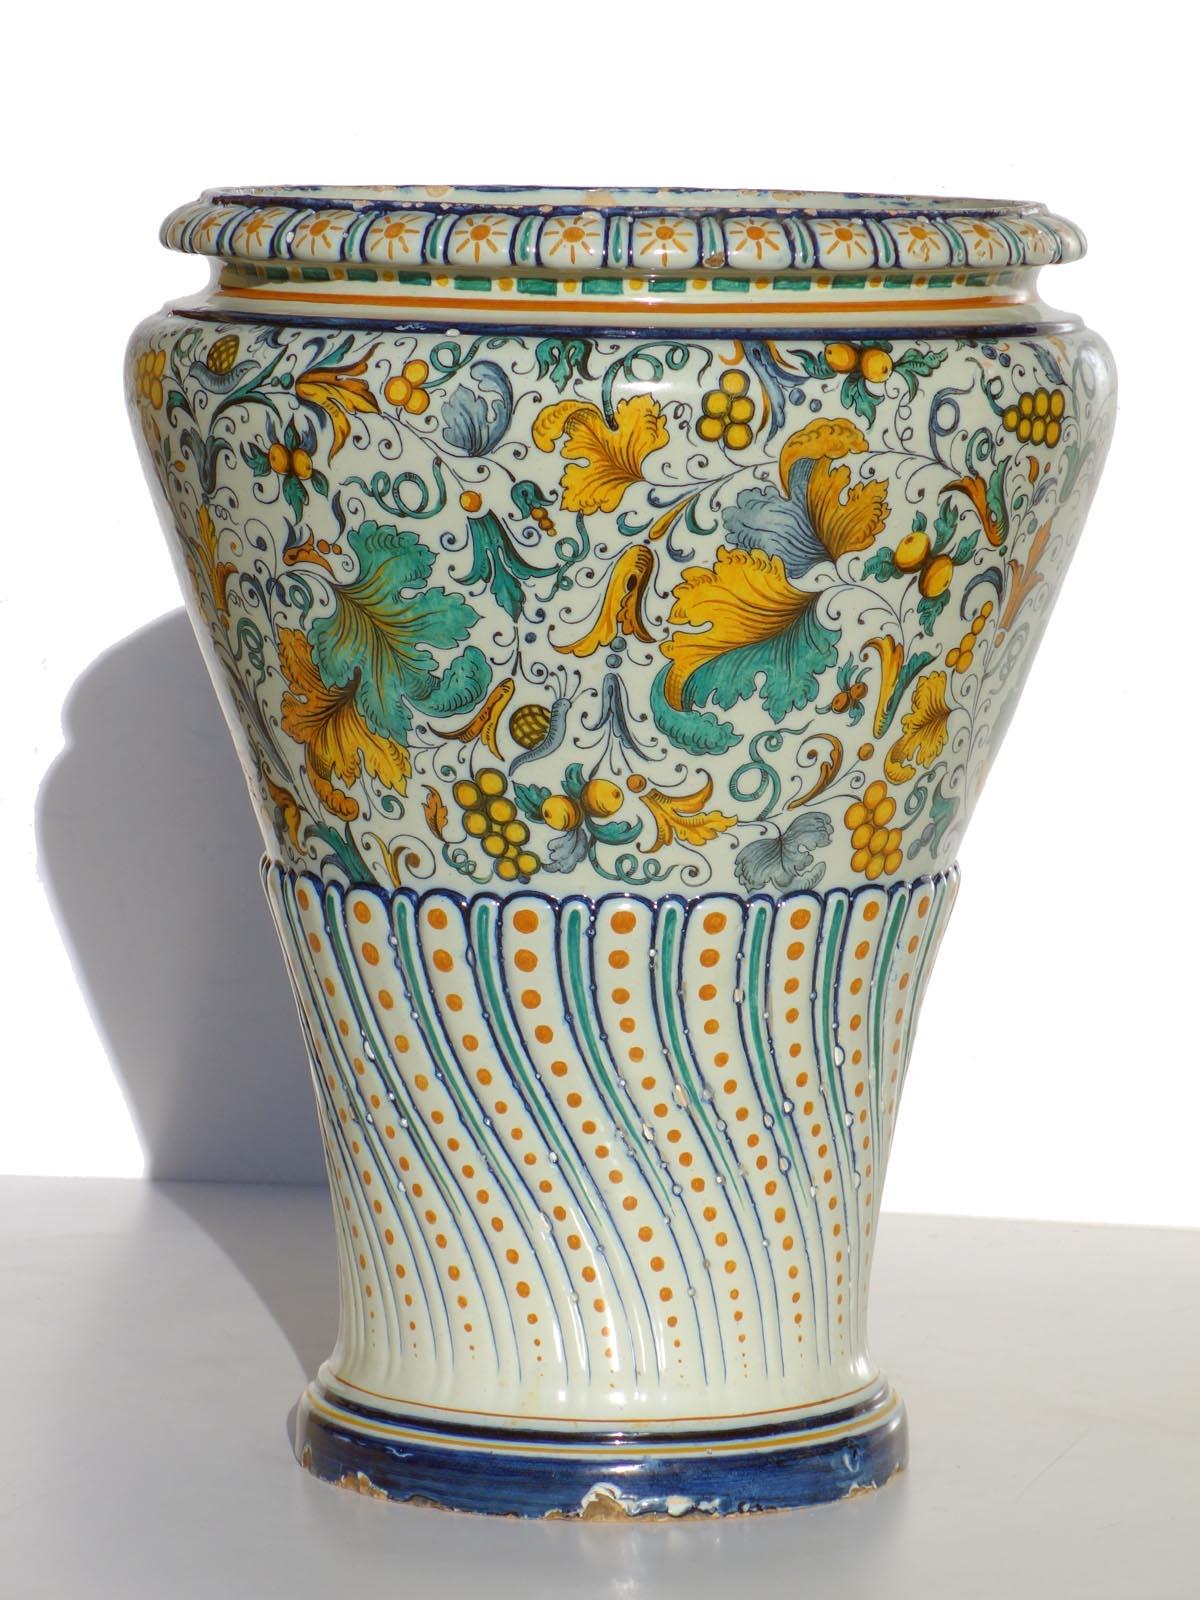 Bigli Vase aus Majolika
Ginori
Italien, 1850-1890

Sehr gute Kodierung
Difetto di cottura sotto la base (vedere fotografia)